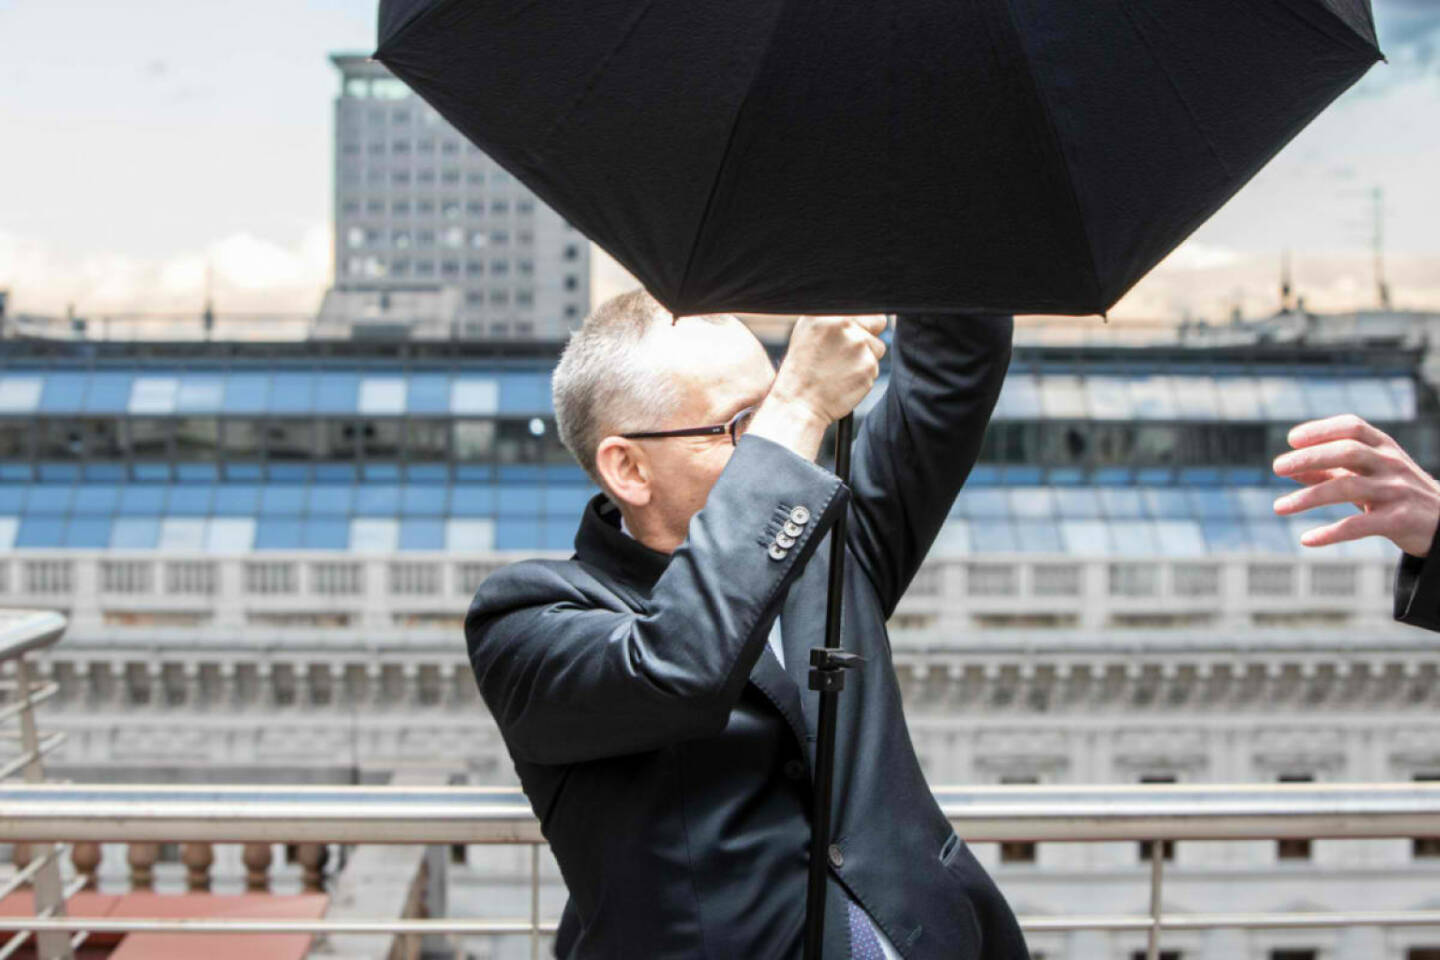 Peter Sitte, com_unit: Fotoshoot auf dem Dach von Accenture. Plötzlich fegt Orkan Xaver über uns hinweg. Halte Schirm und Blitz (noch) fest im Griff. 